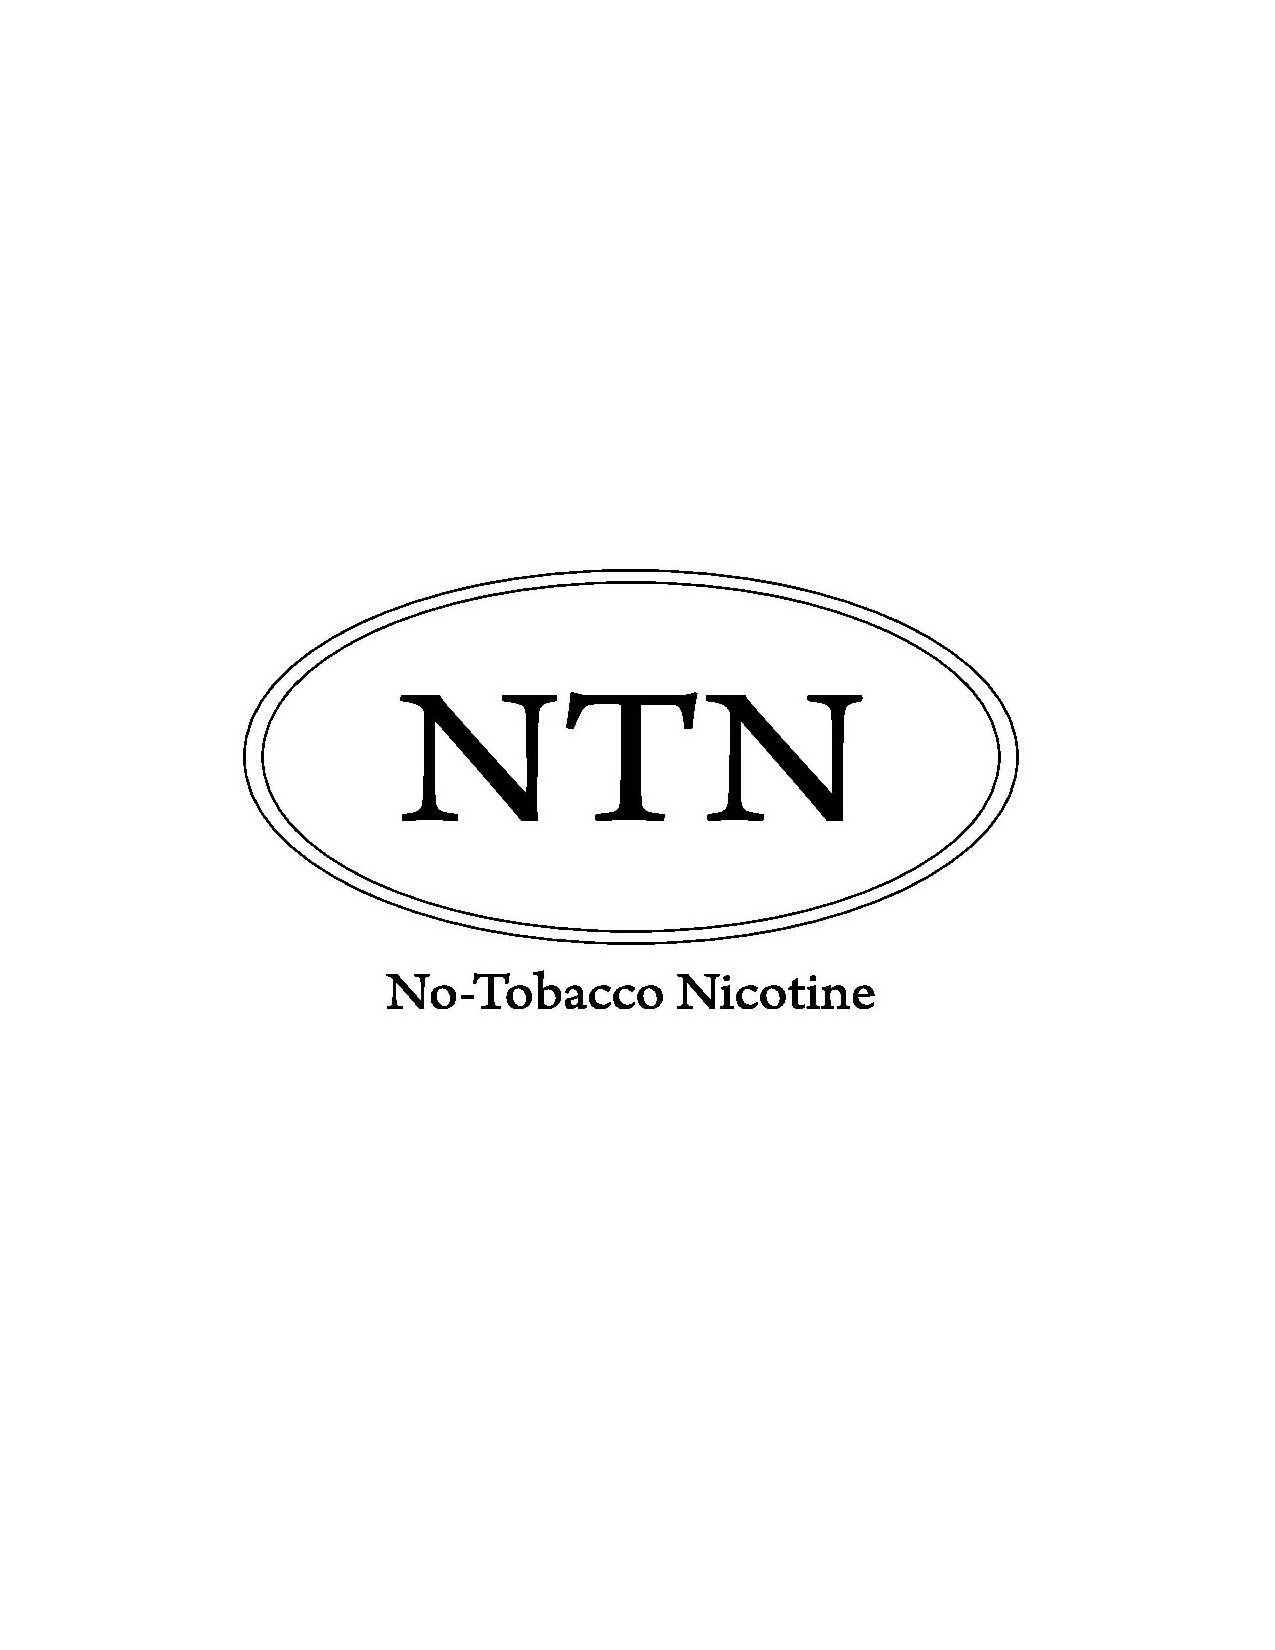  NTN NO-TOBACCO NICOTINE